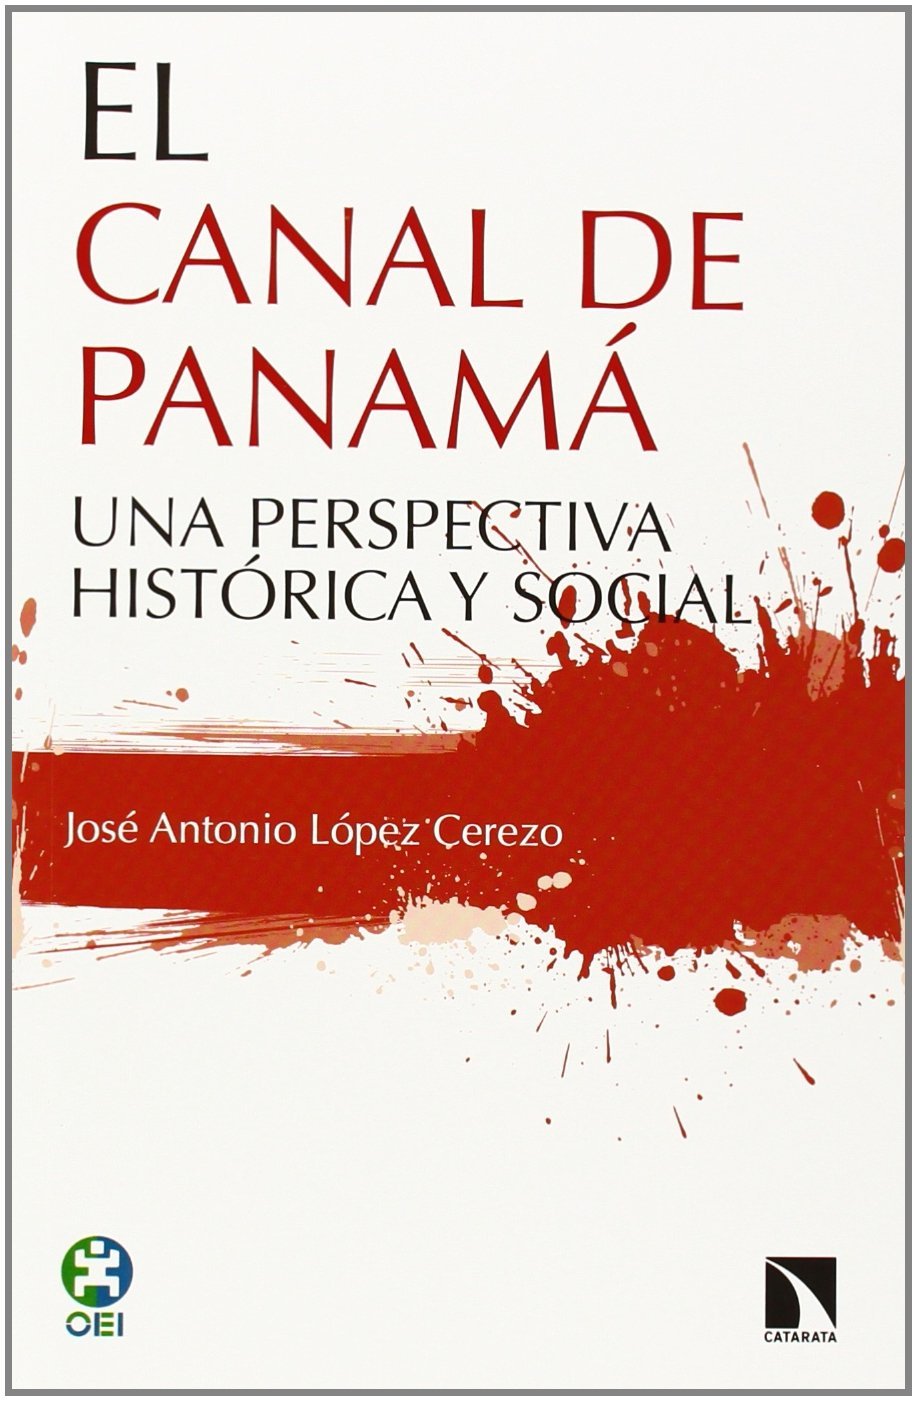 EL CANAL DE PANAMÁ UNA PERSPECTIVA HISTÓRICA Y SOCIAL